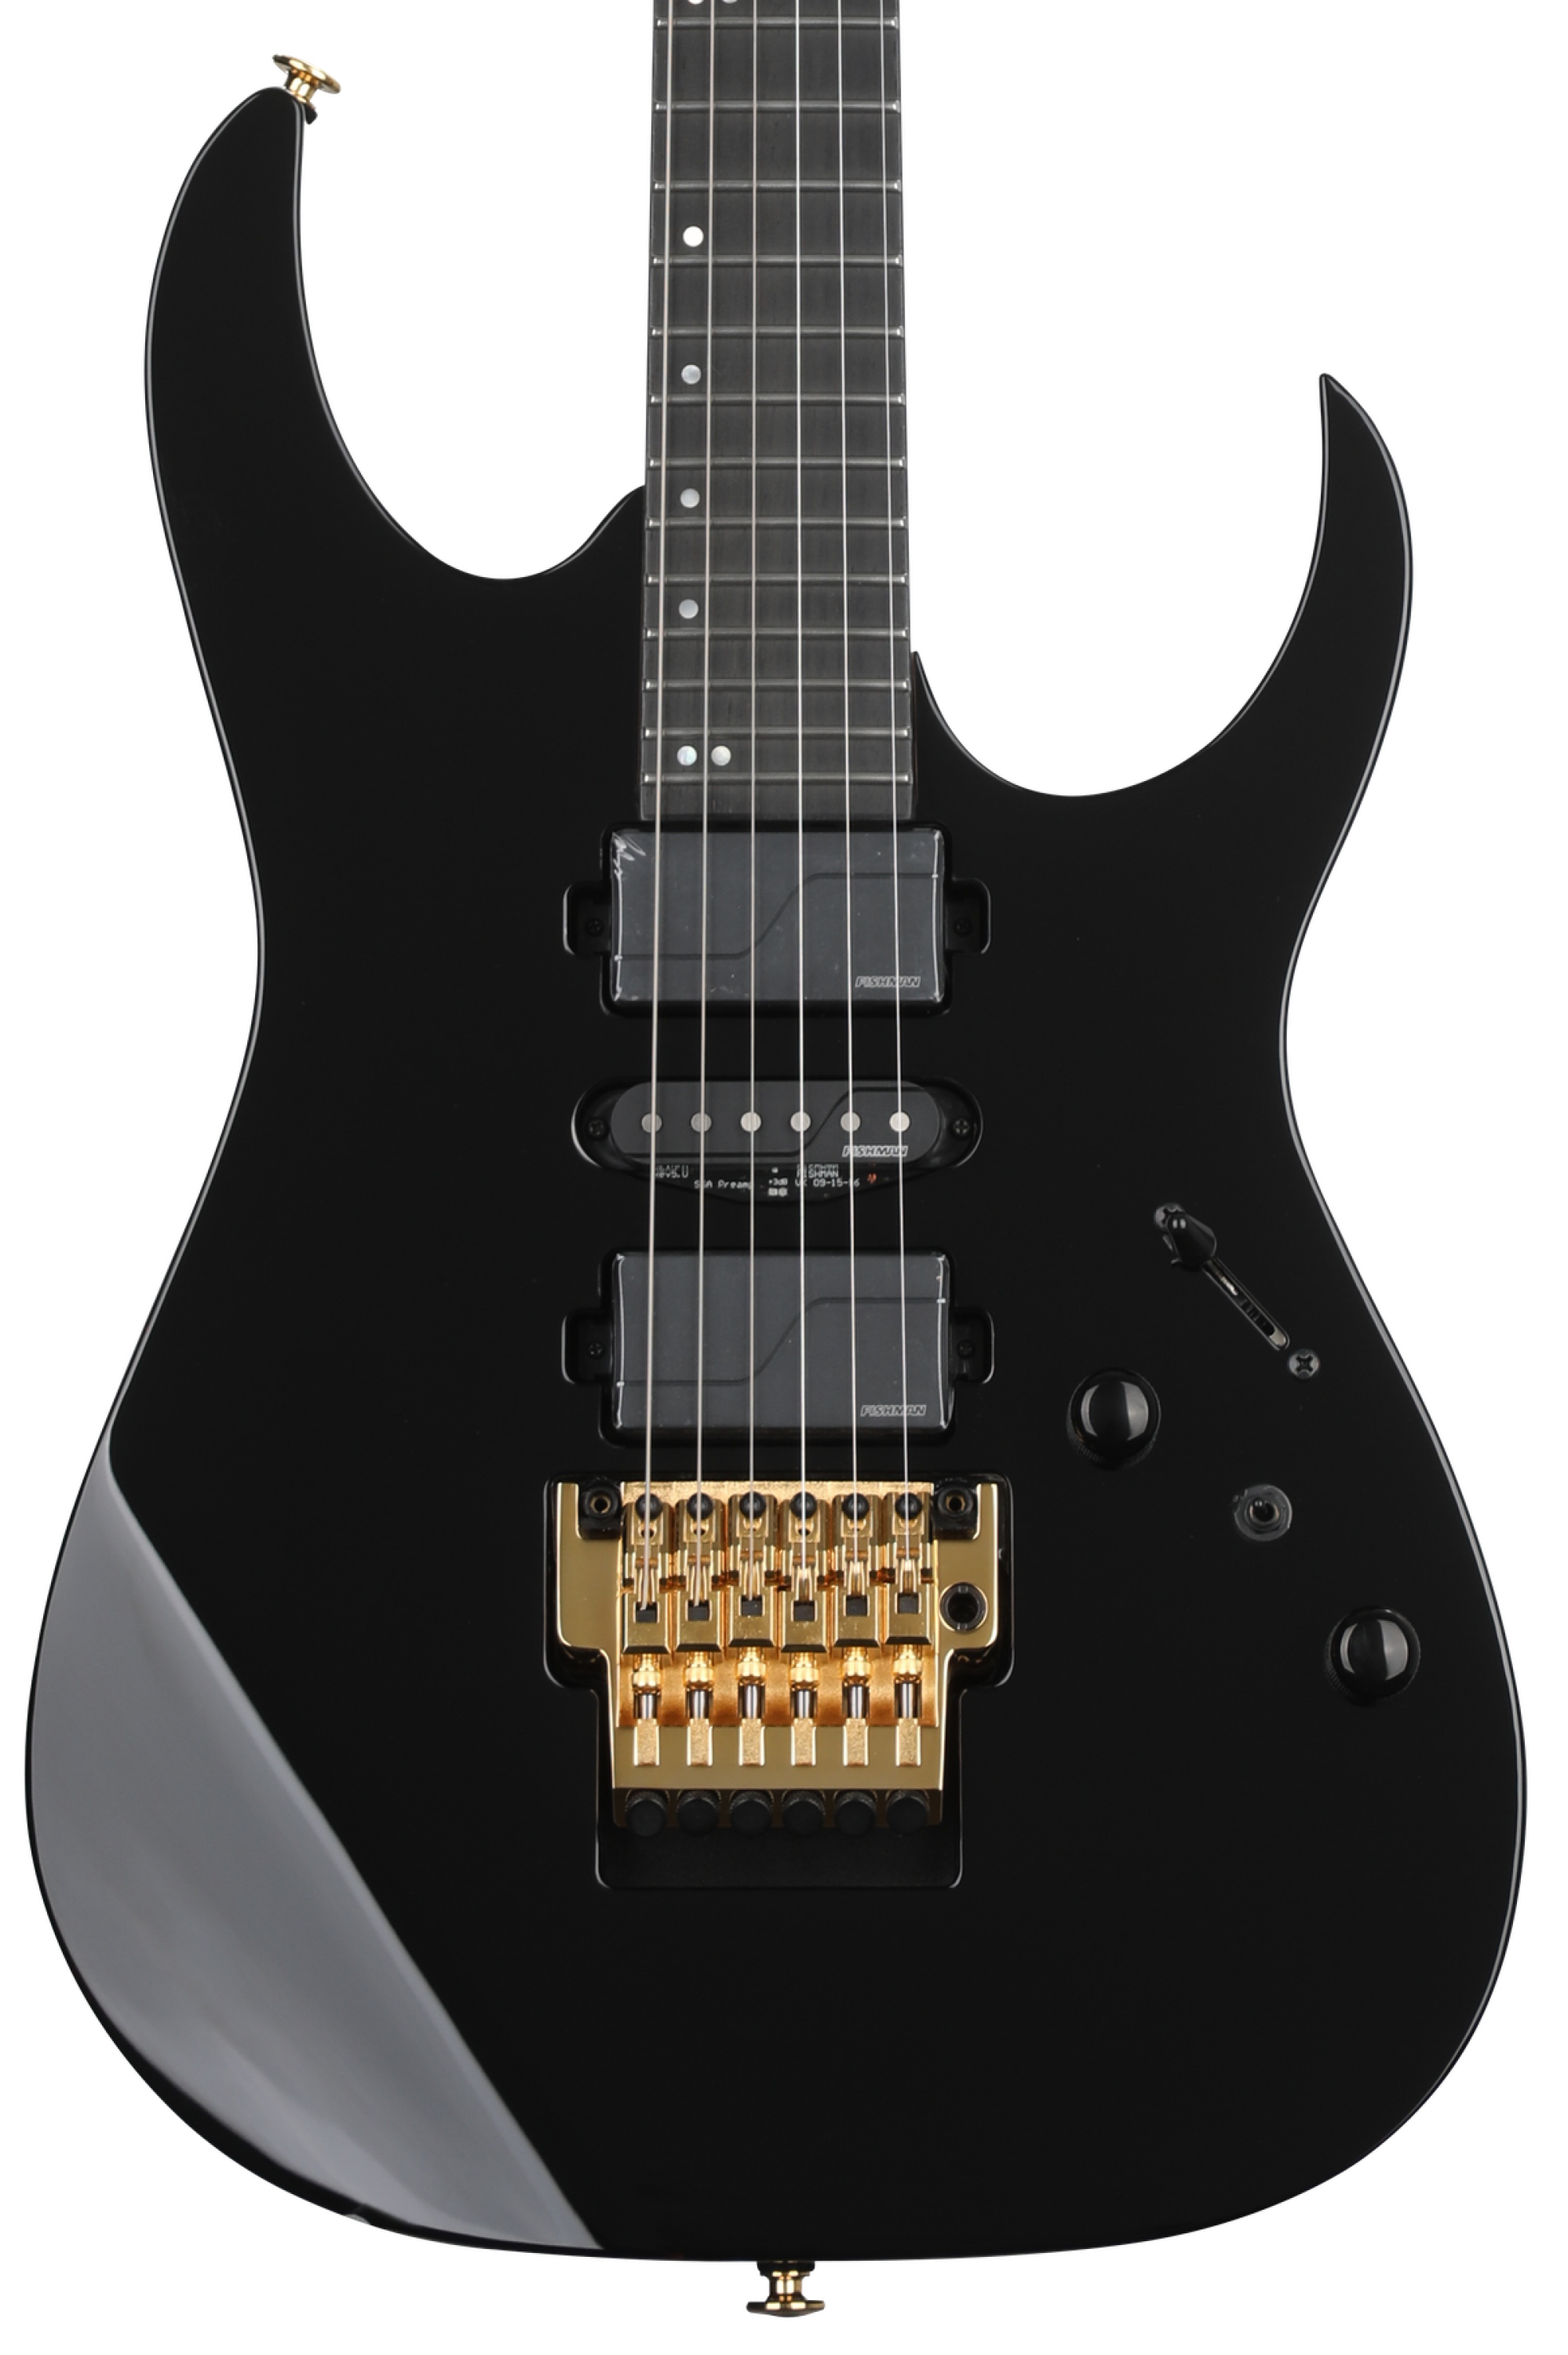 Ibanez Prestige RG5170B Electric Guitar - Black | Sweetwater